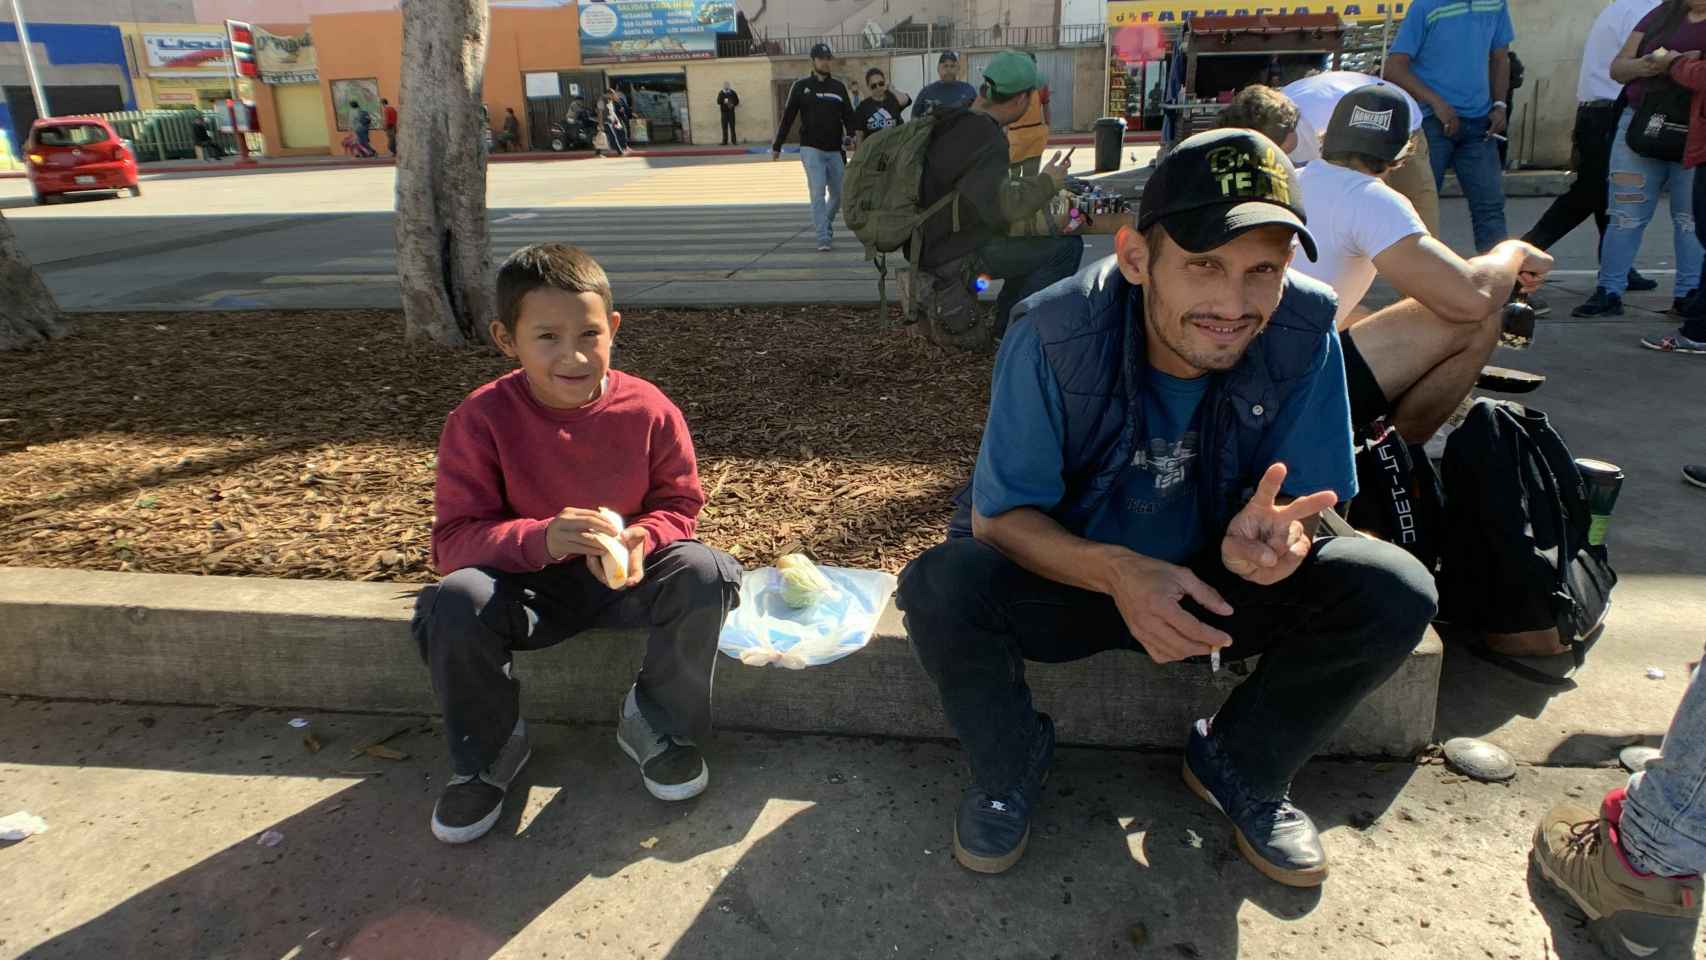 Un niño y un hombre, pertenecientes a la caravana, sentados en la calle.